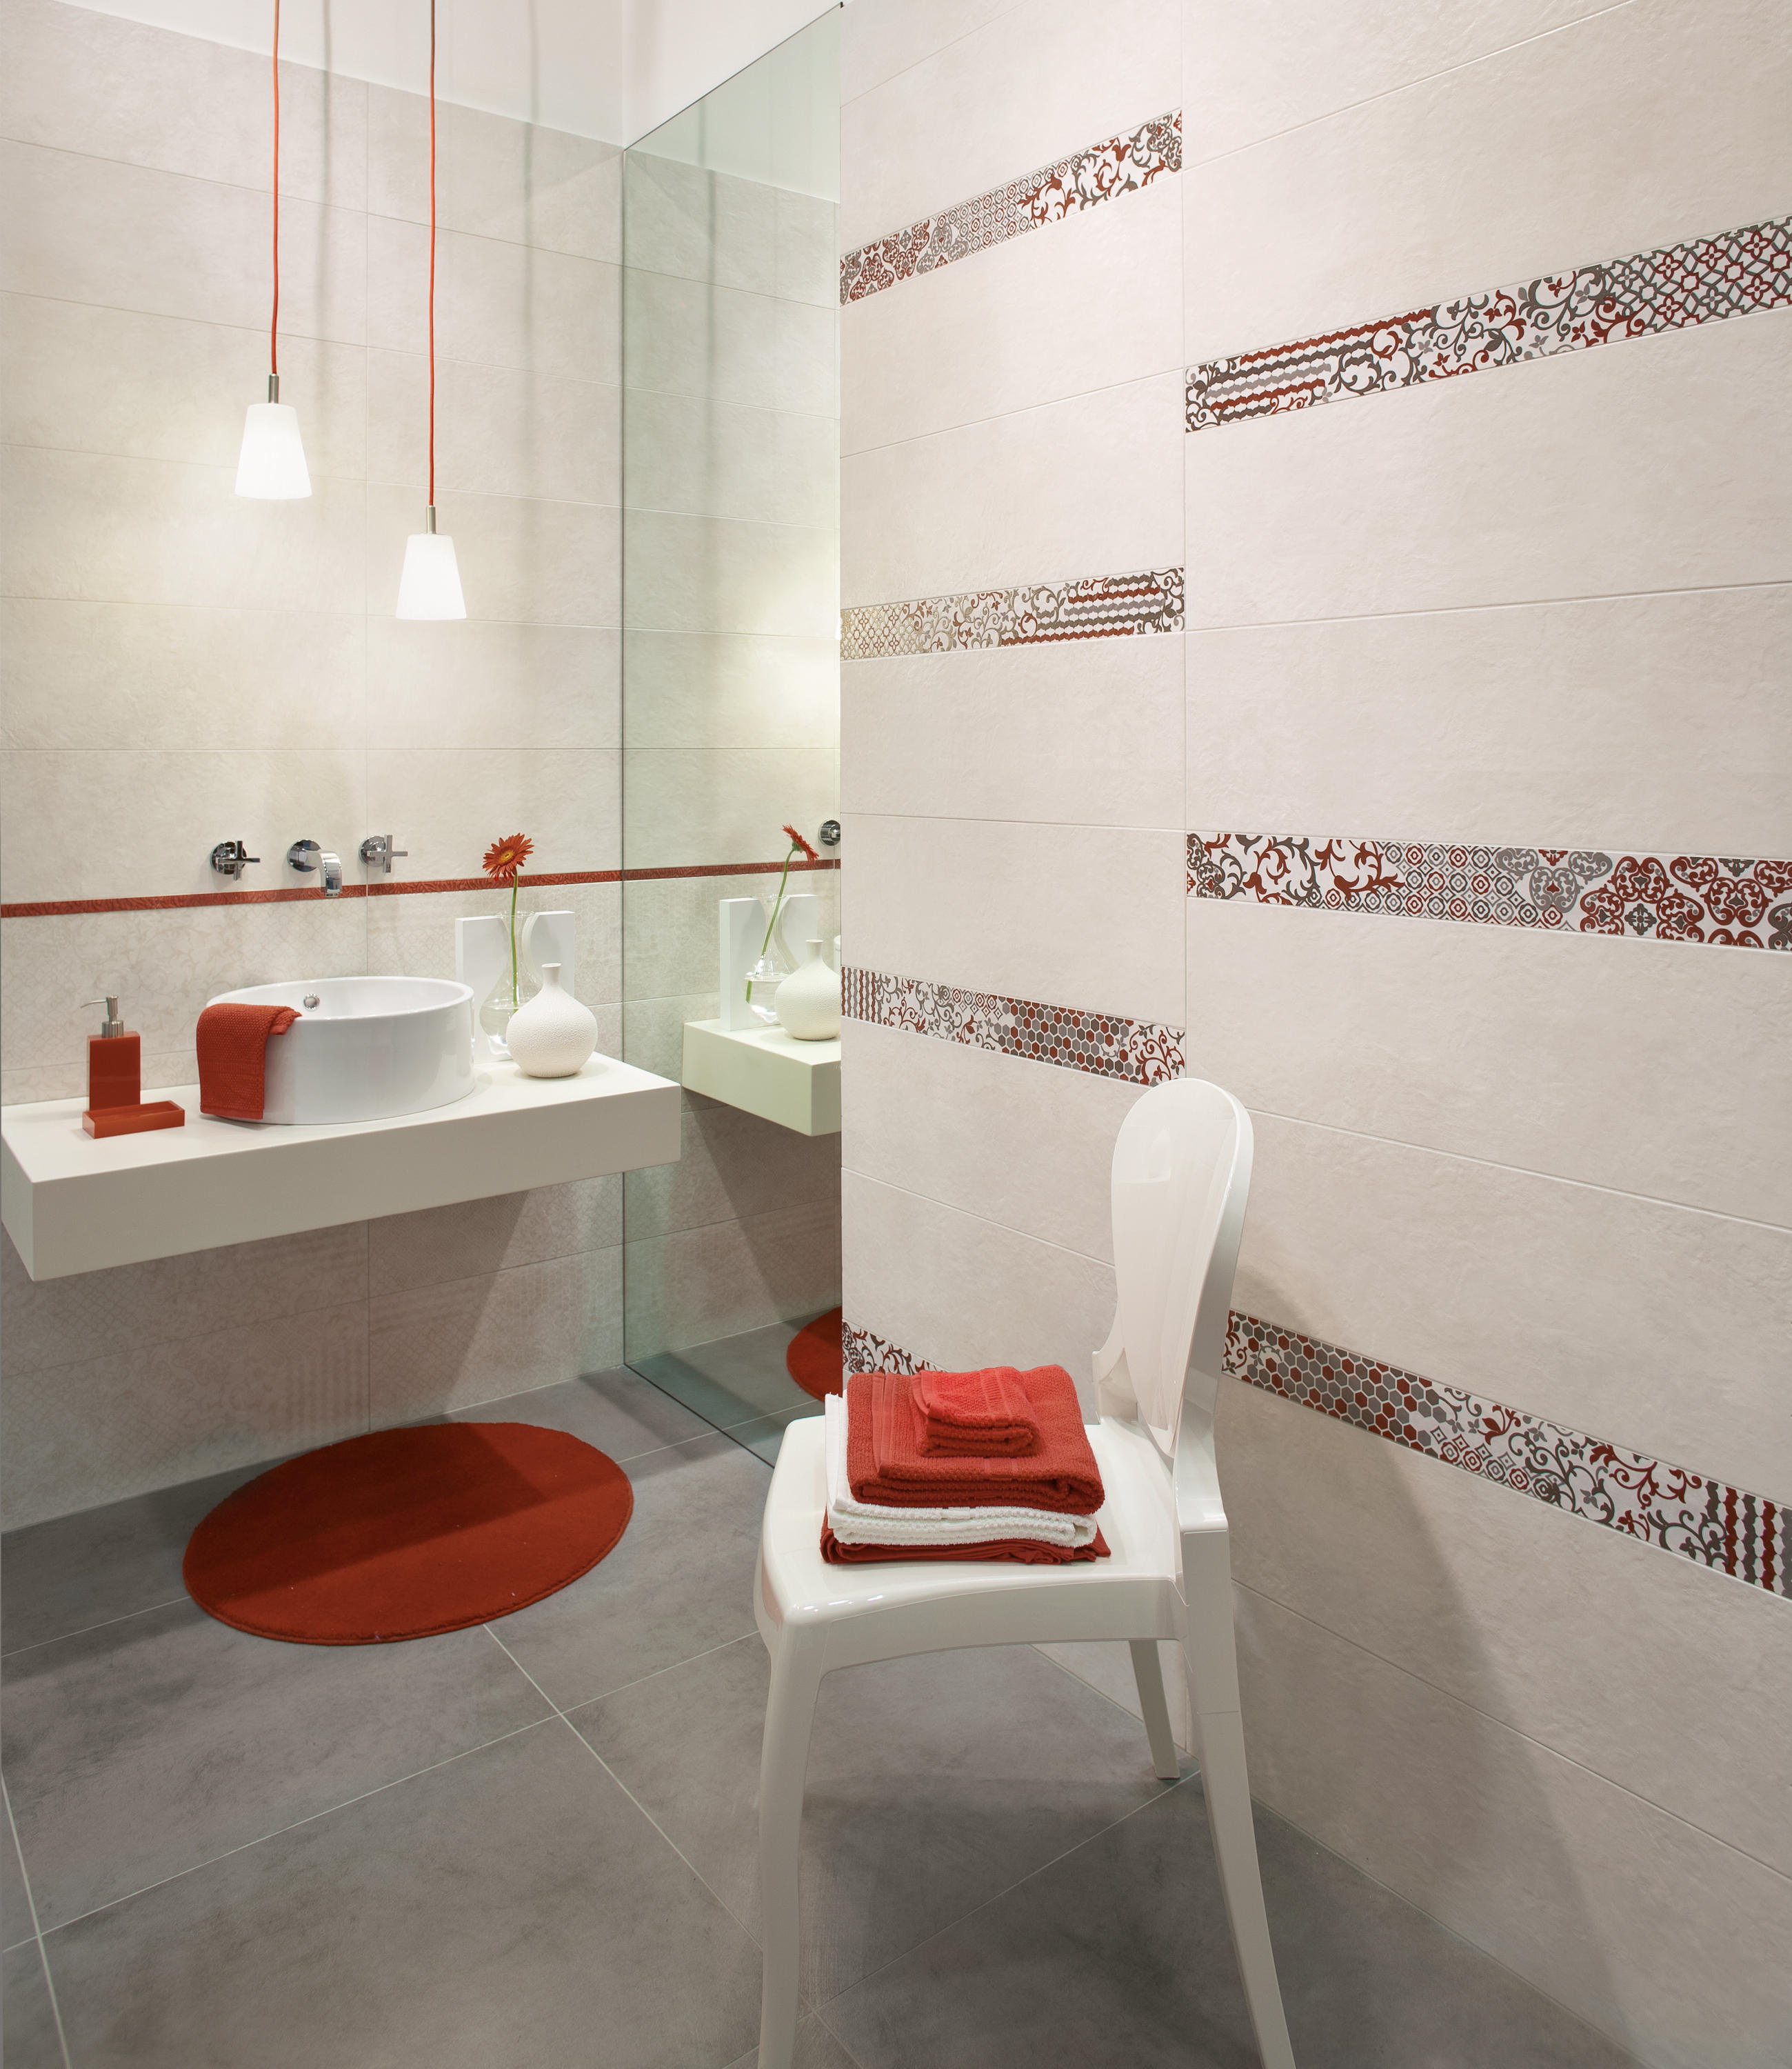 HABITAT AVORIO - Ceramic tiles from Ariana Ceramica | Architonic